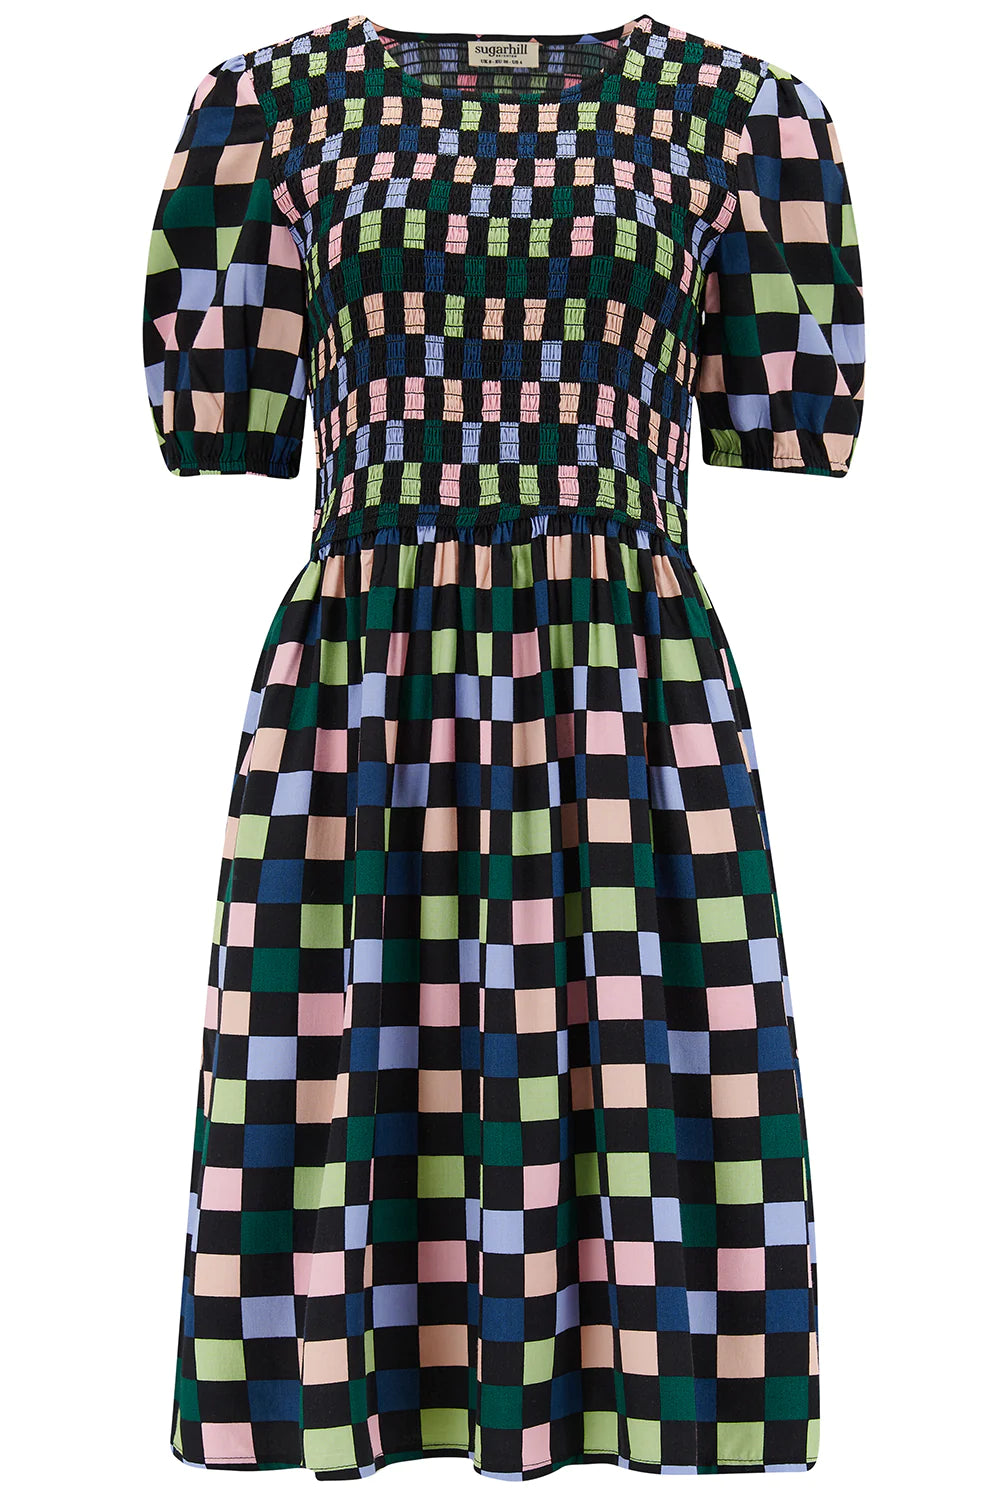 Sugarhill Brighton - Noelle Colourful Checkerboard Shirred Dress